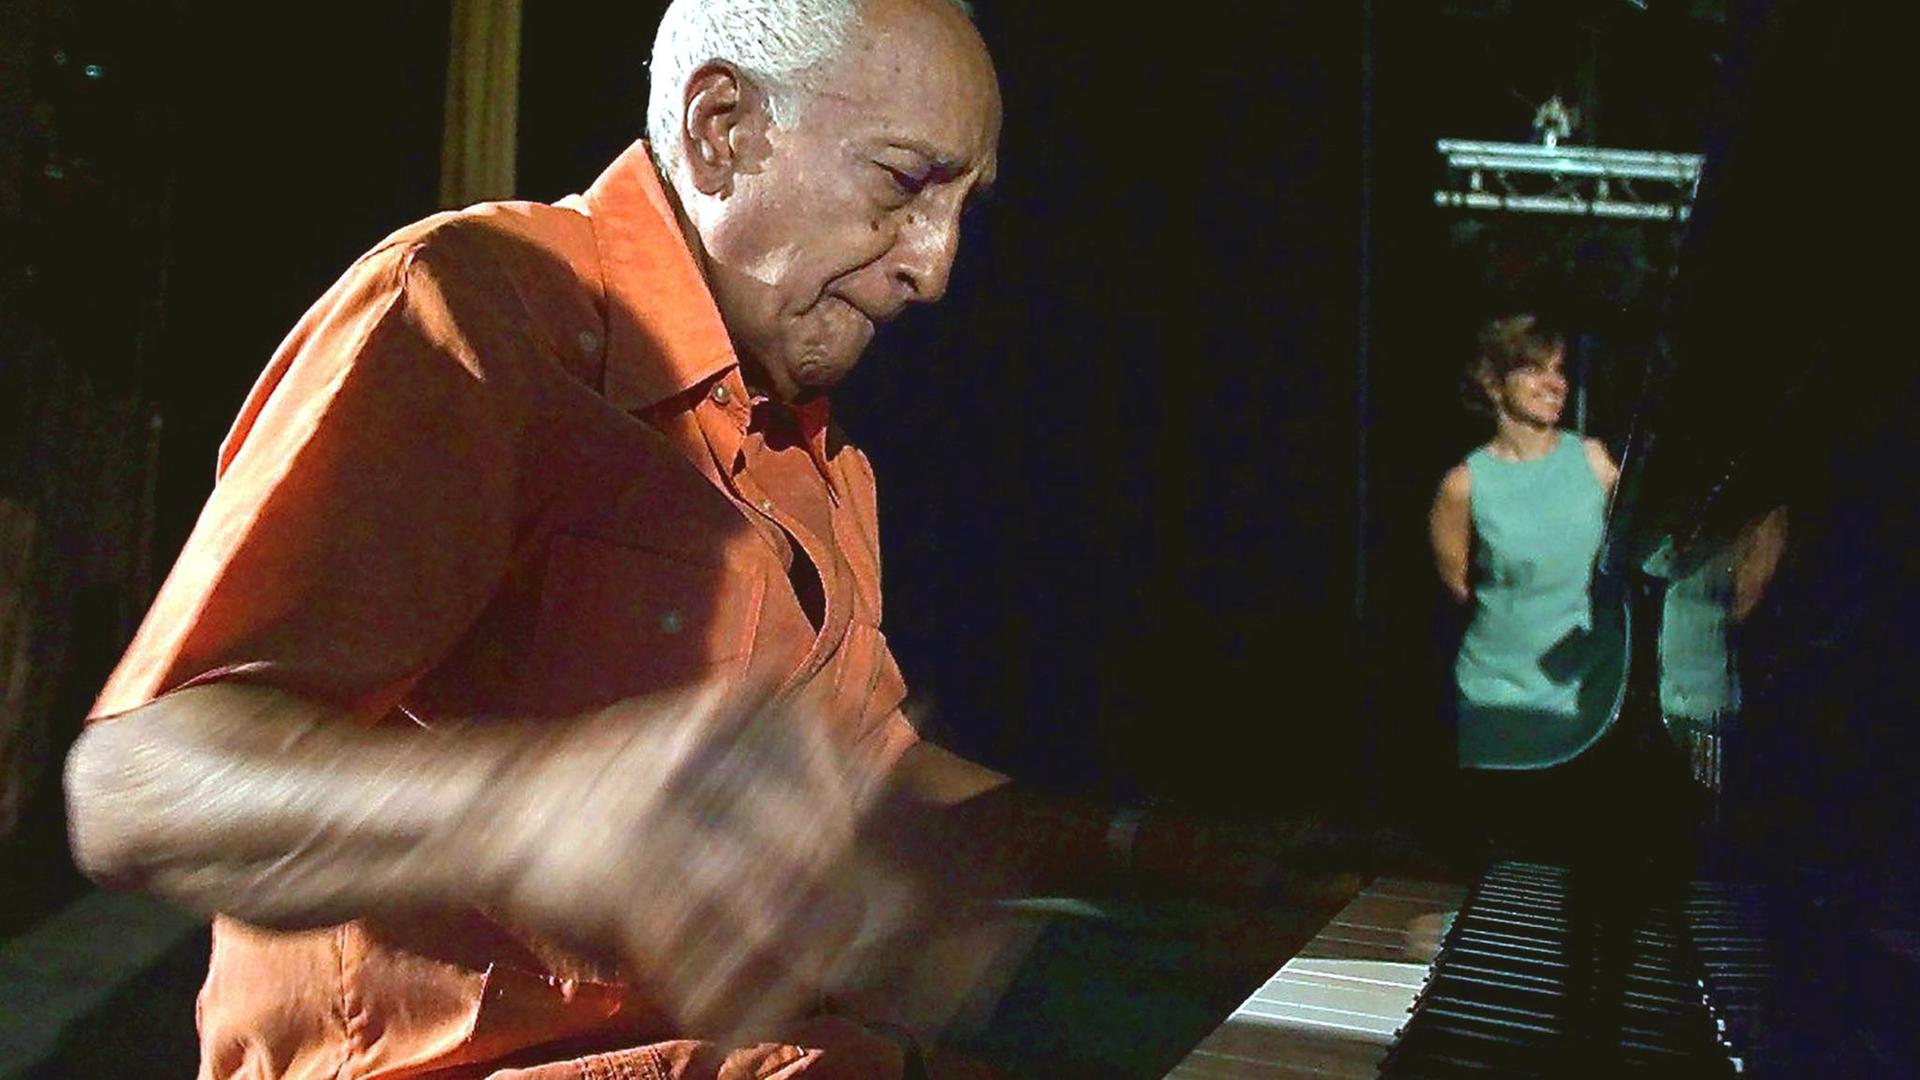 Der Pianist Rubén González, einstiges Mitglied des "Buena Vista Social Club", am Piano (aufgenommen am 11. August 2000)